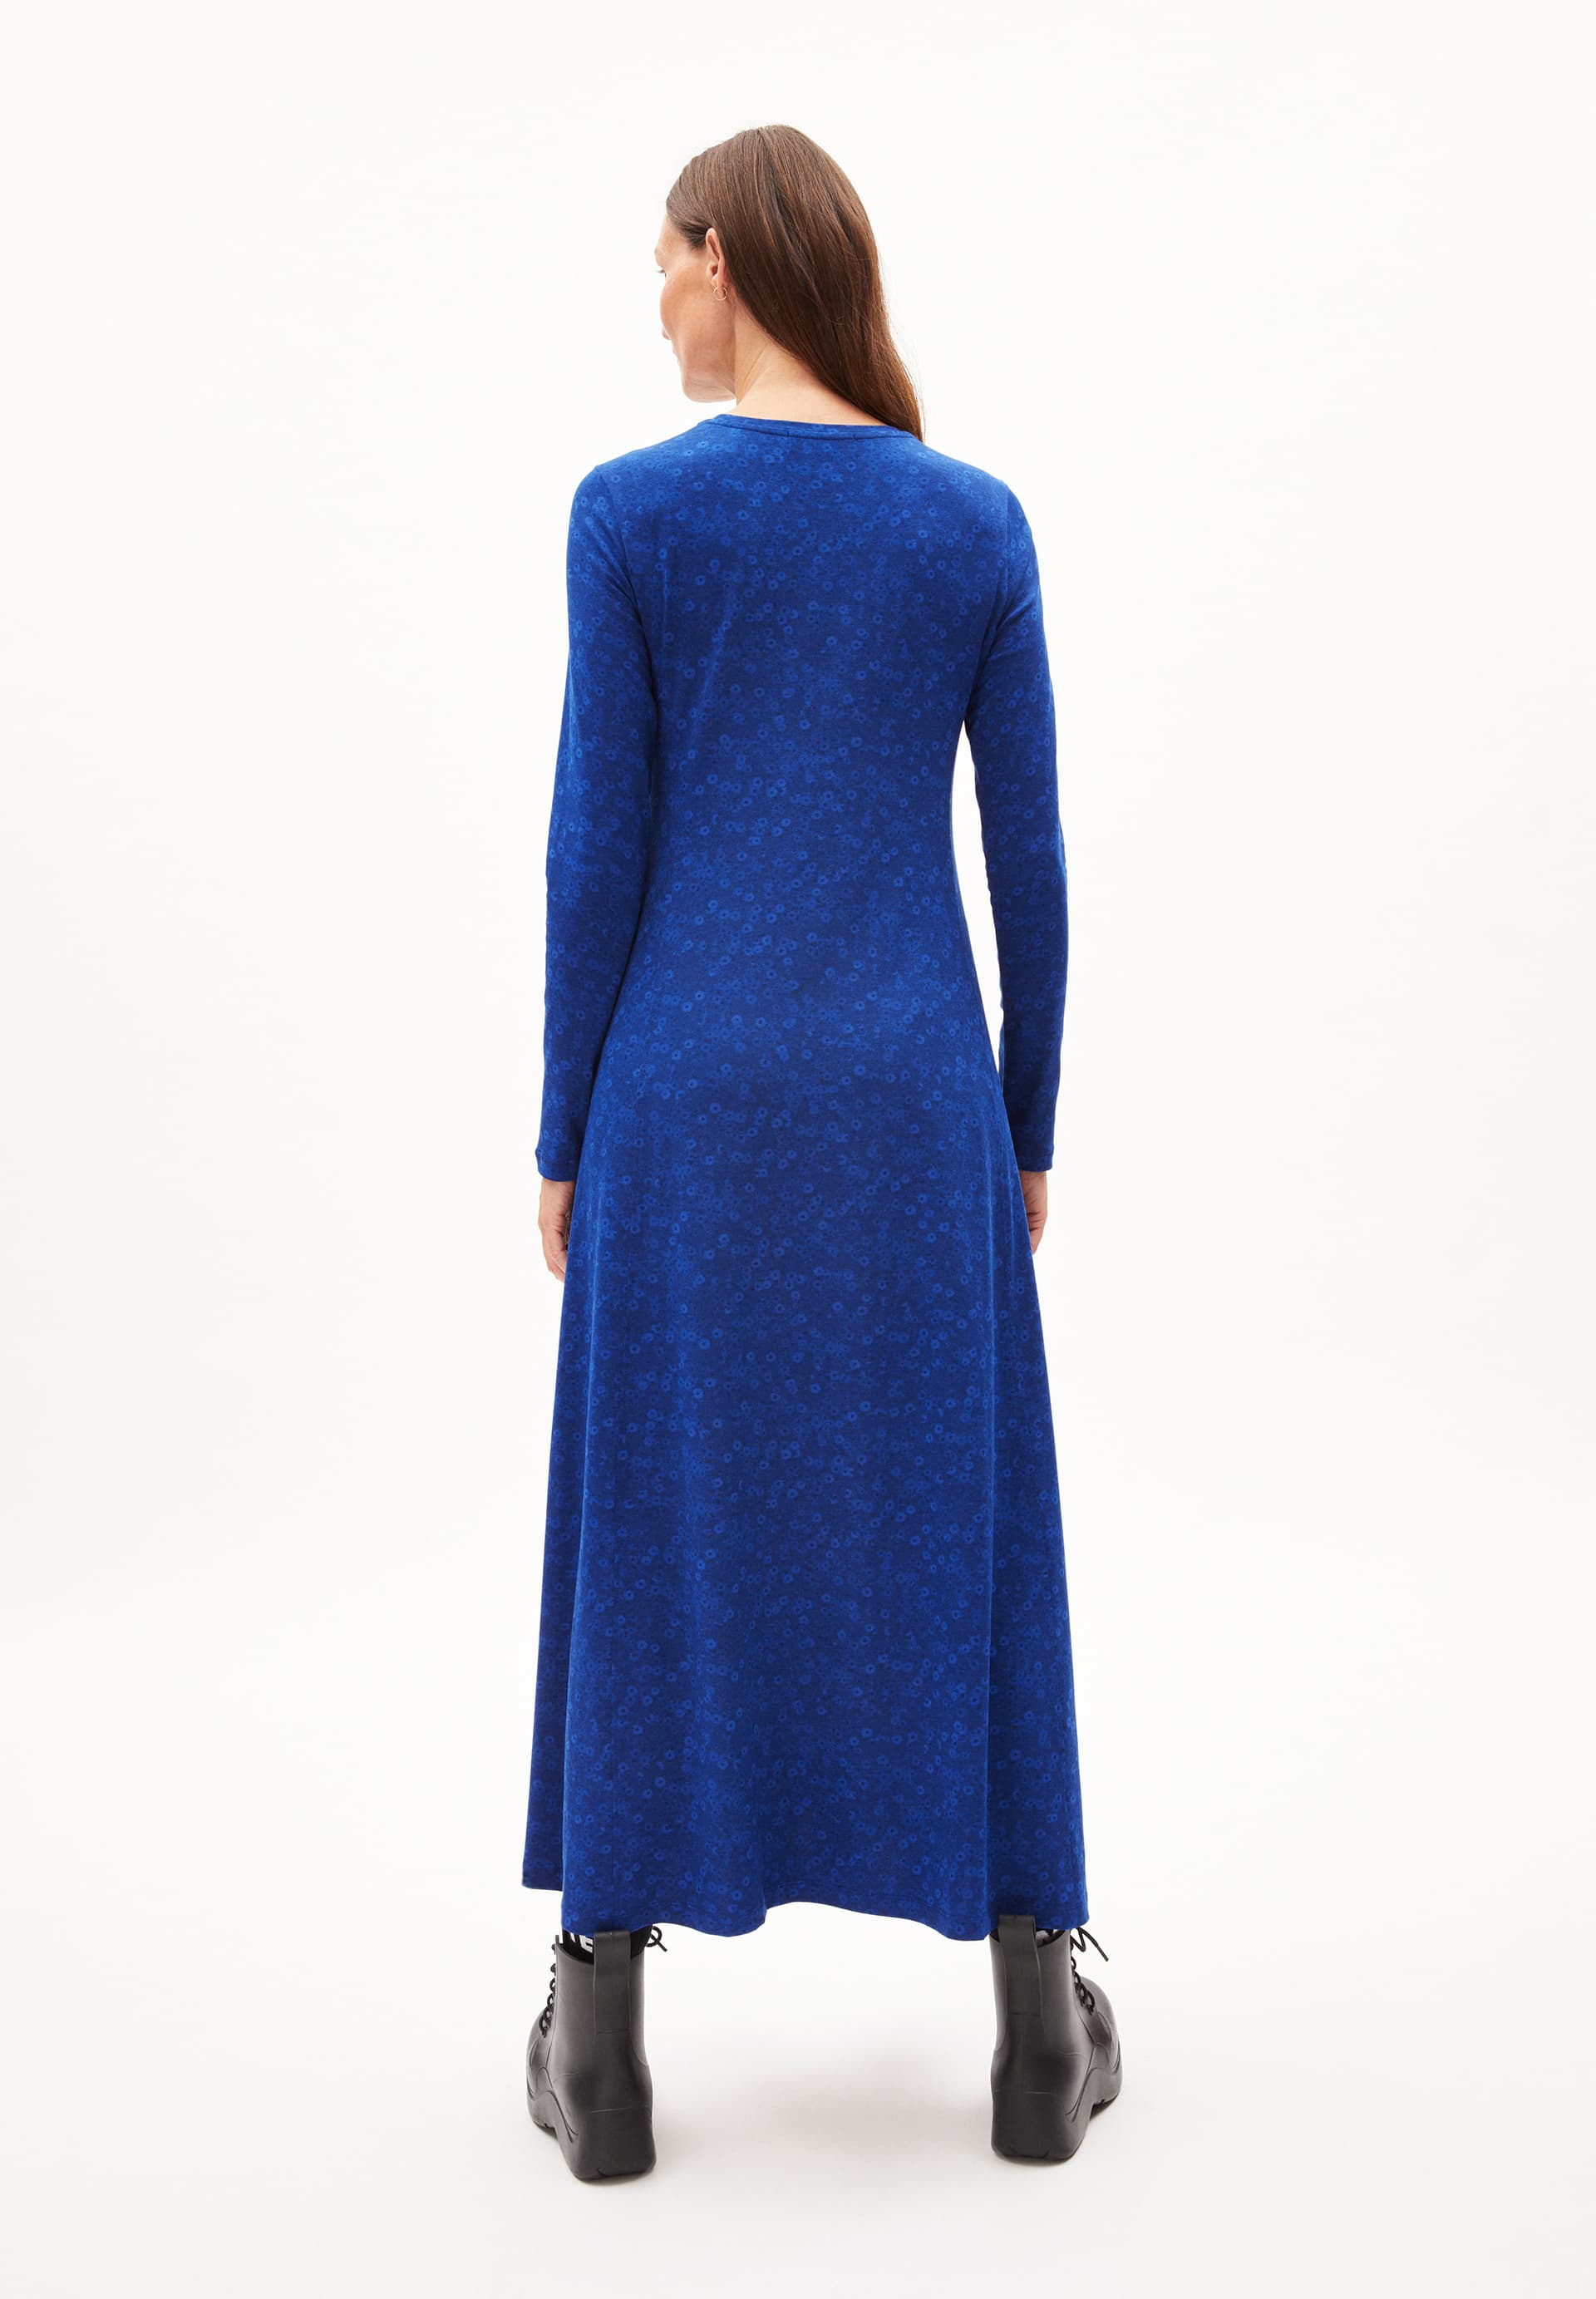 AZURAA MILLES FLEURS Jersey Dress Slim Fit made of Organic Cotton Mix